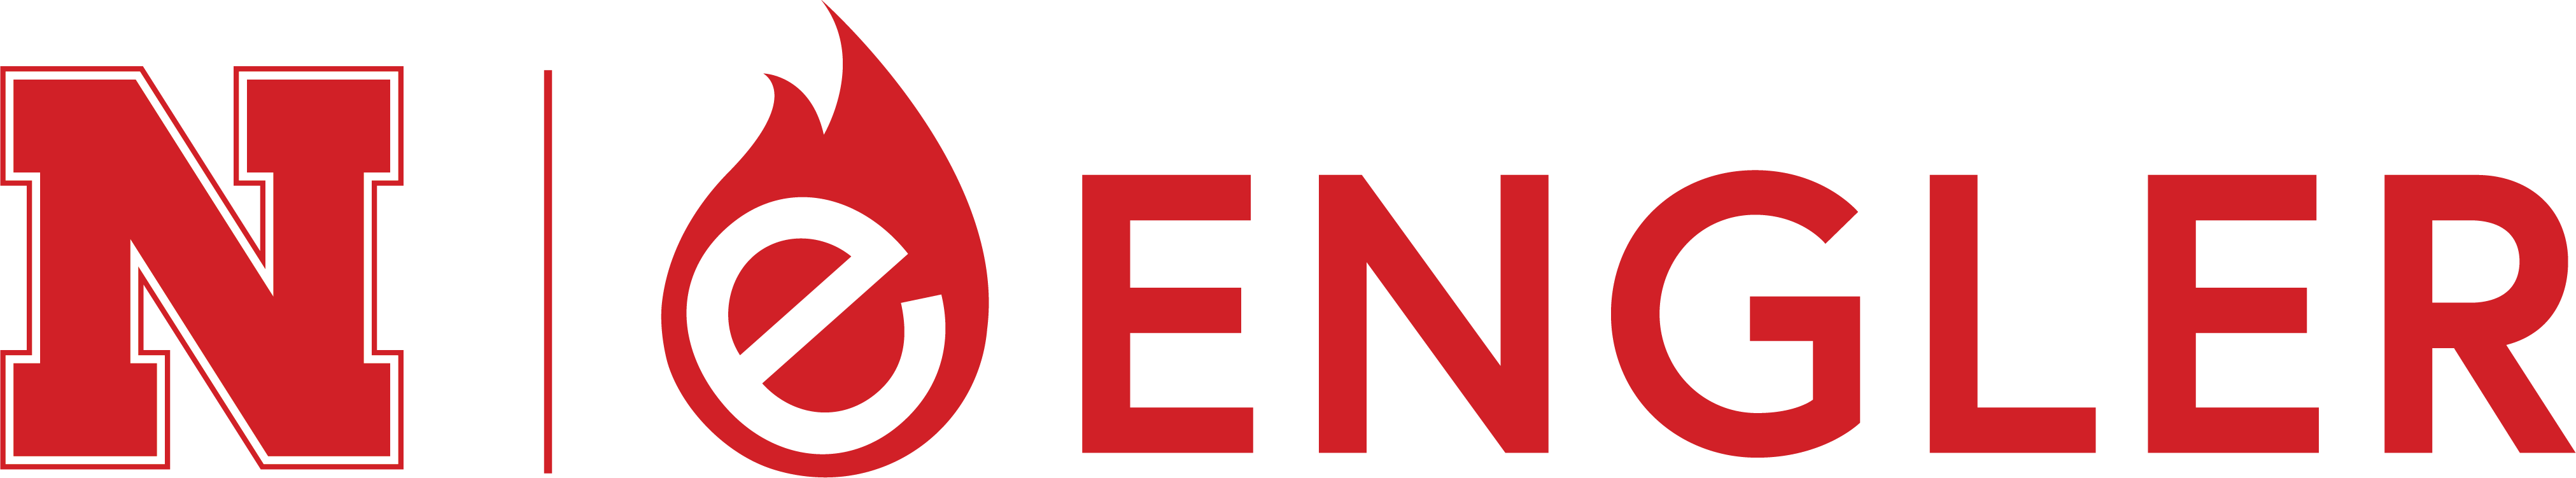 Engler Entrepreneurship logo